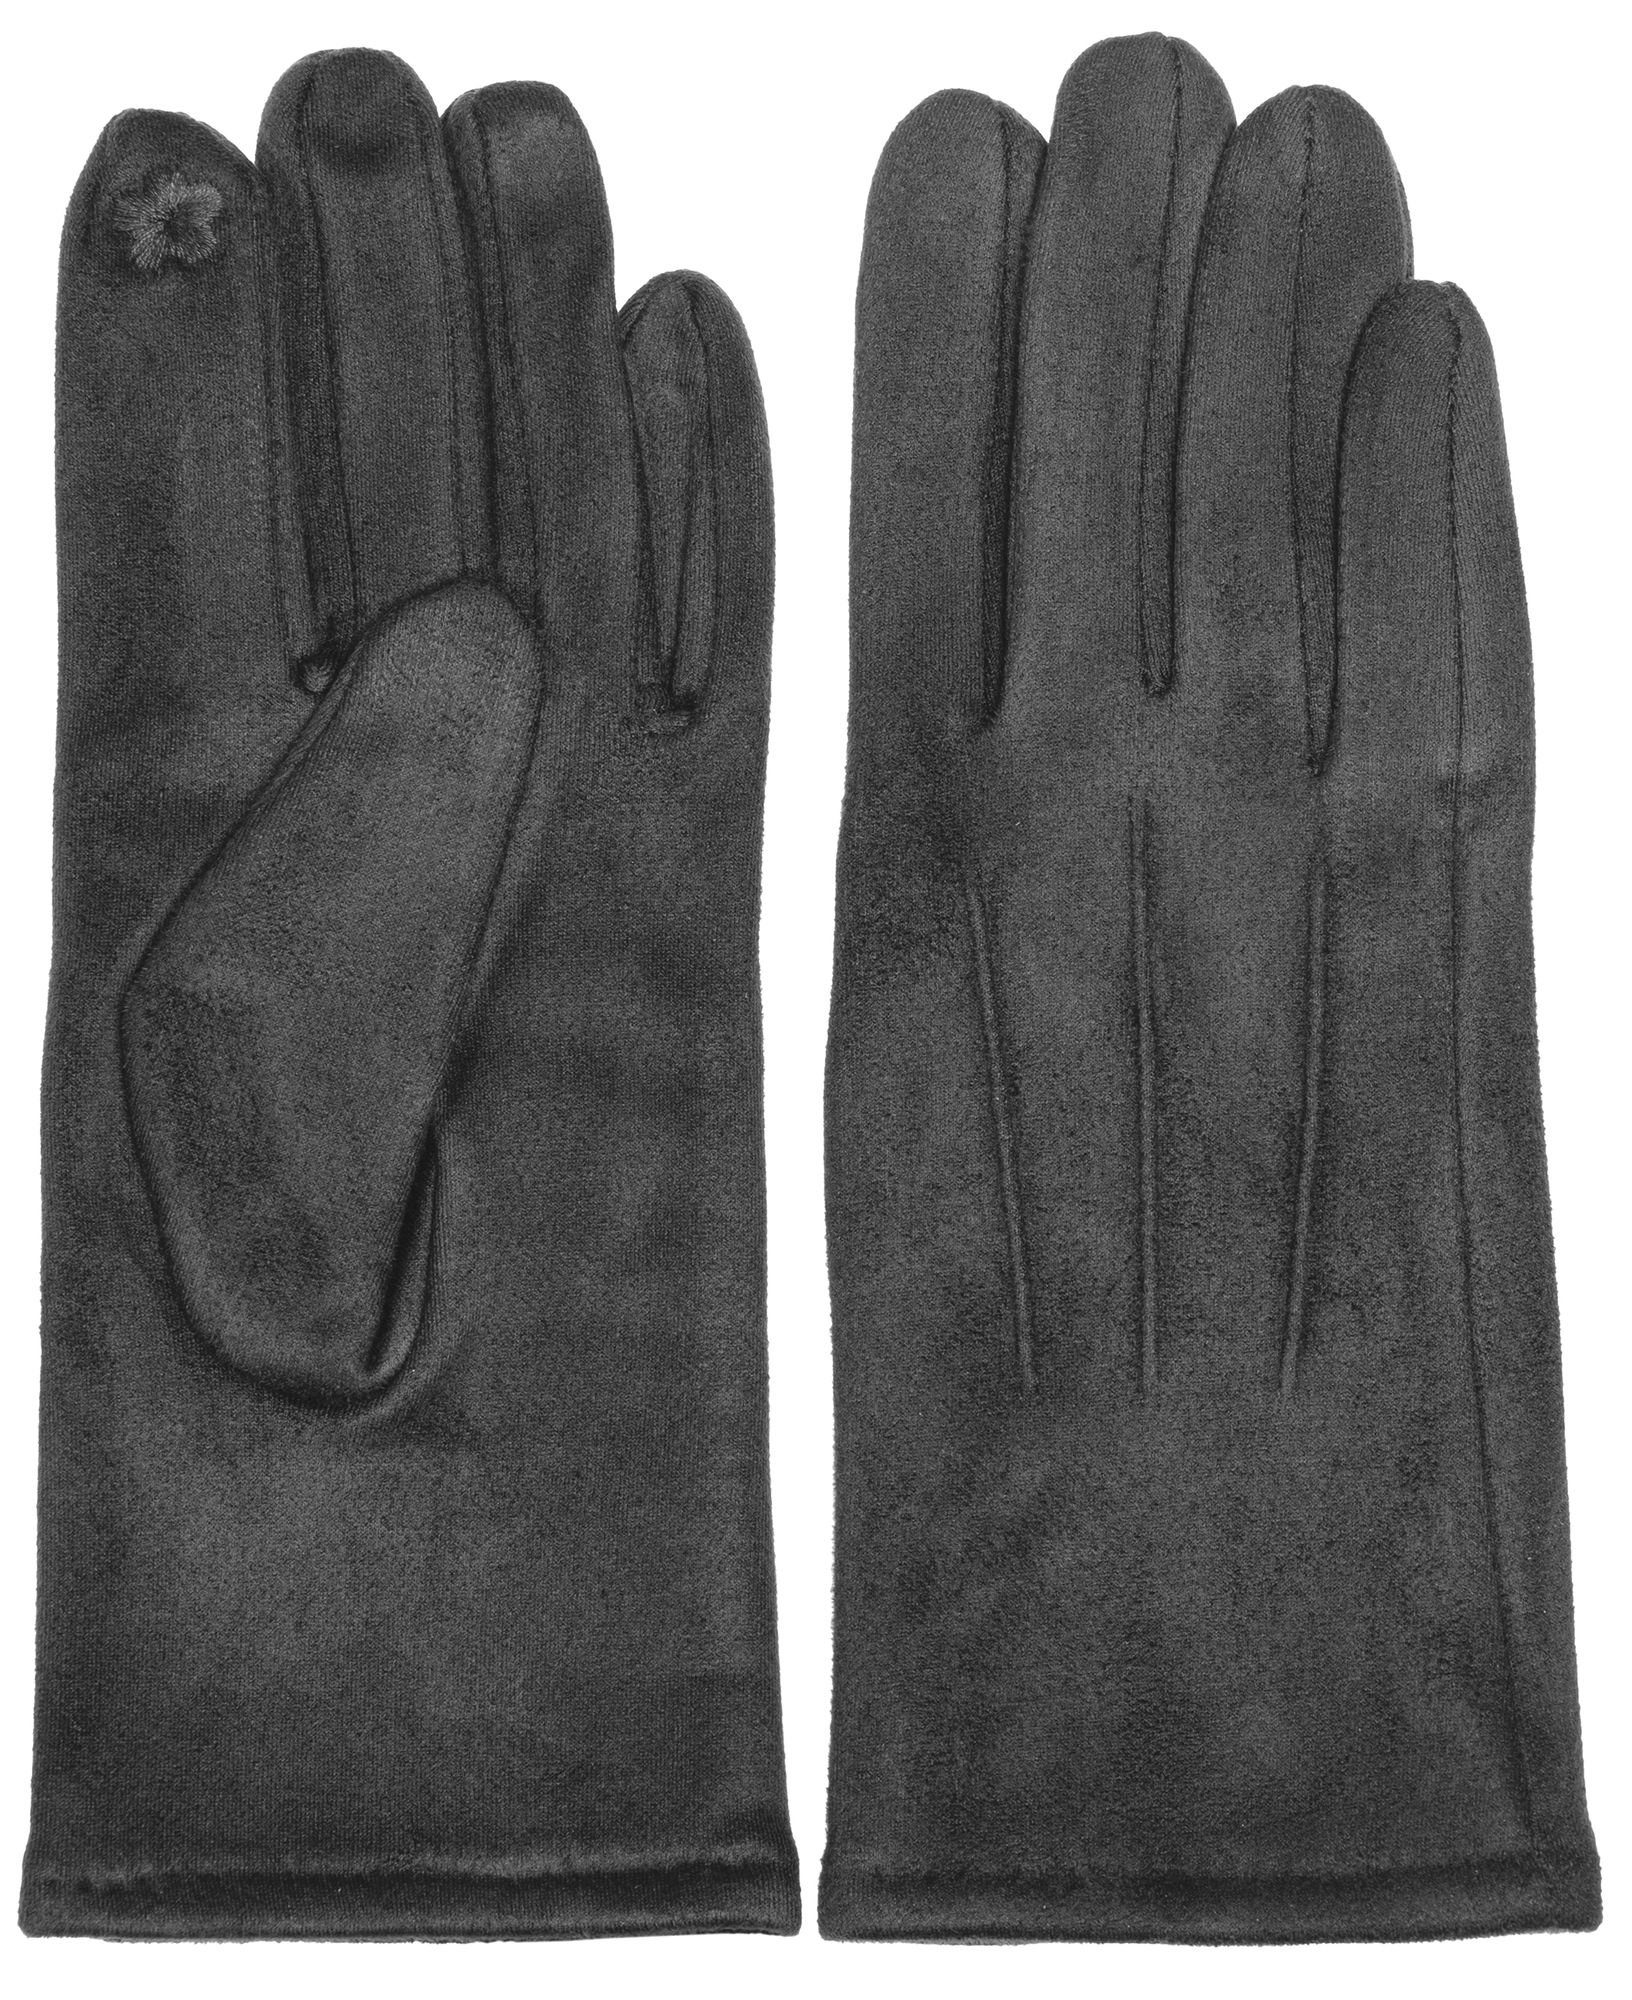 Caspar Strickhandschuhe GLV014 klassisch elegante uni Damen Handschuhe mit 3 Nähten